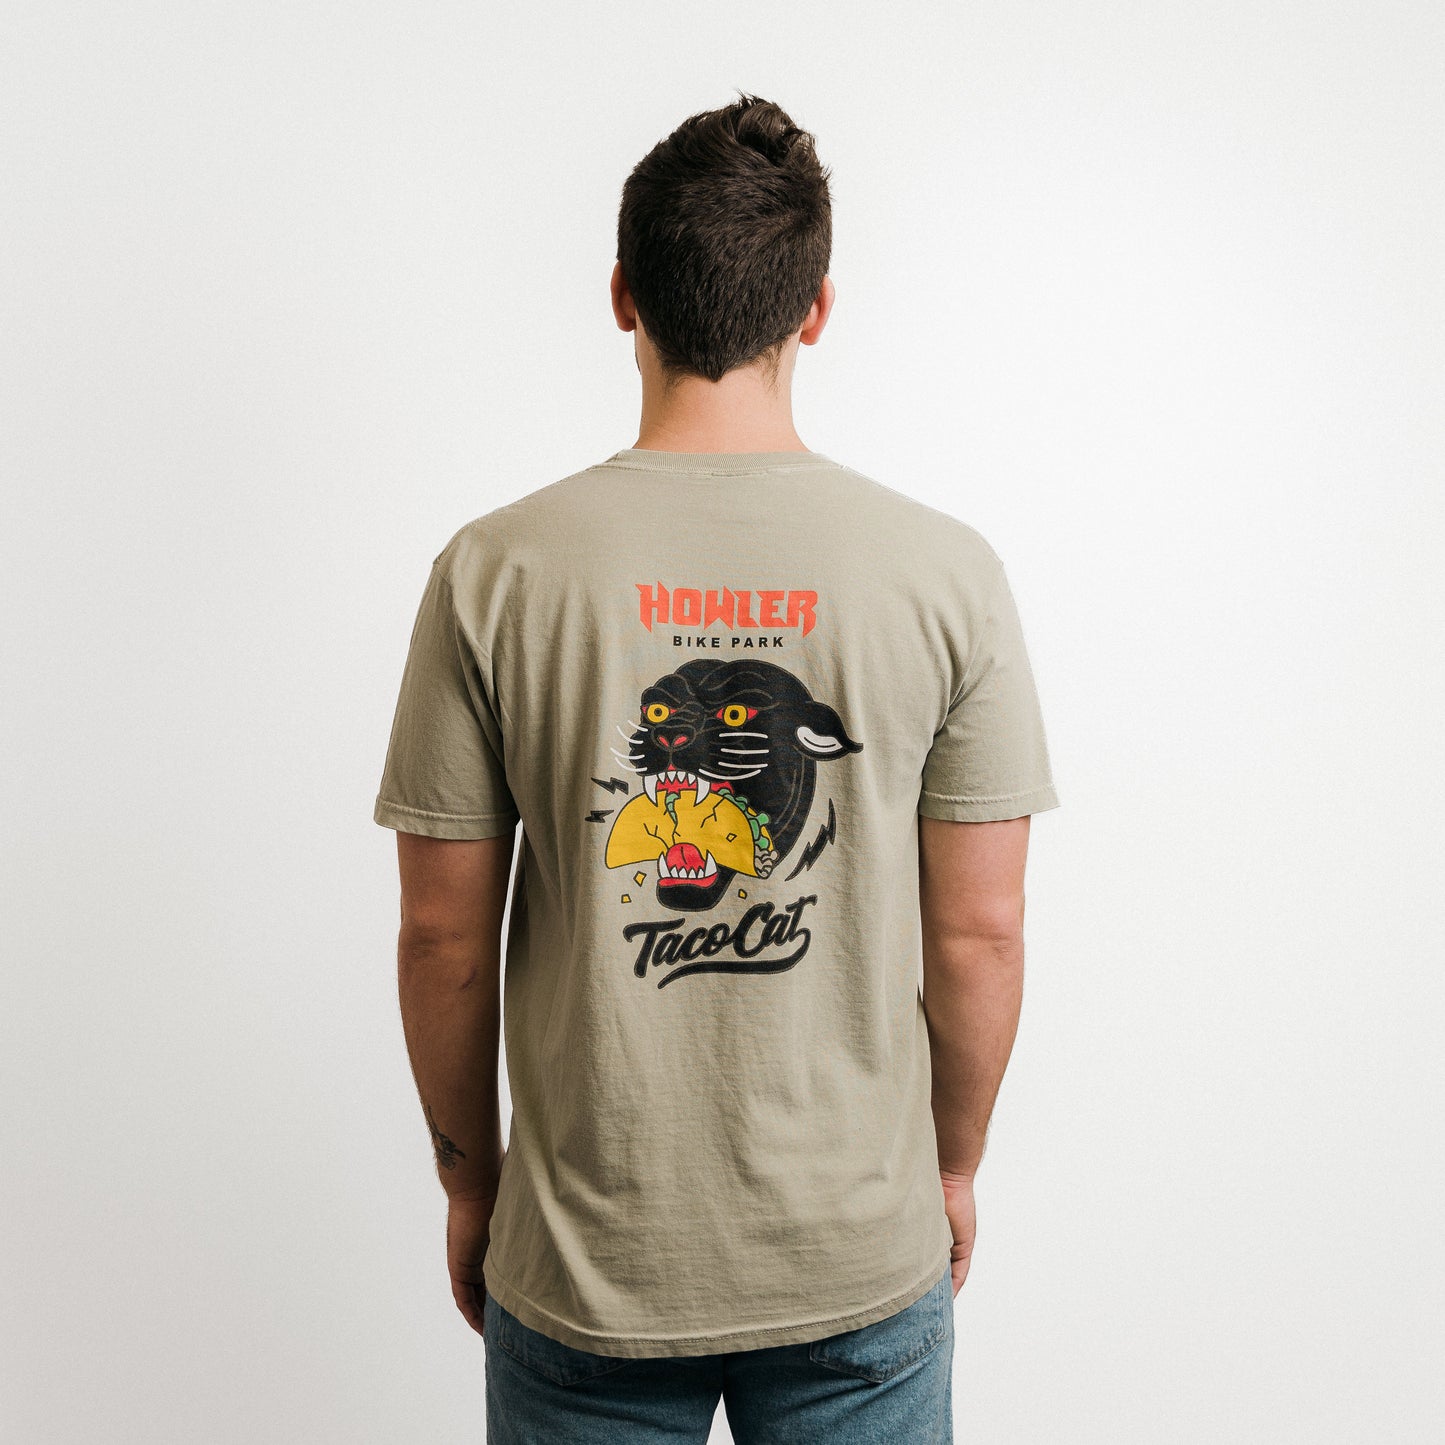 Howler Bike Park Taco Cat T-Shirt